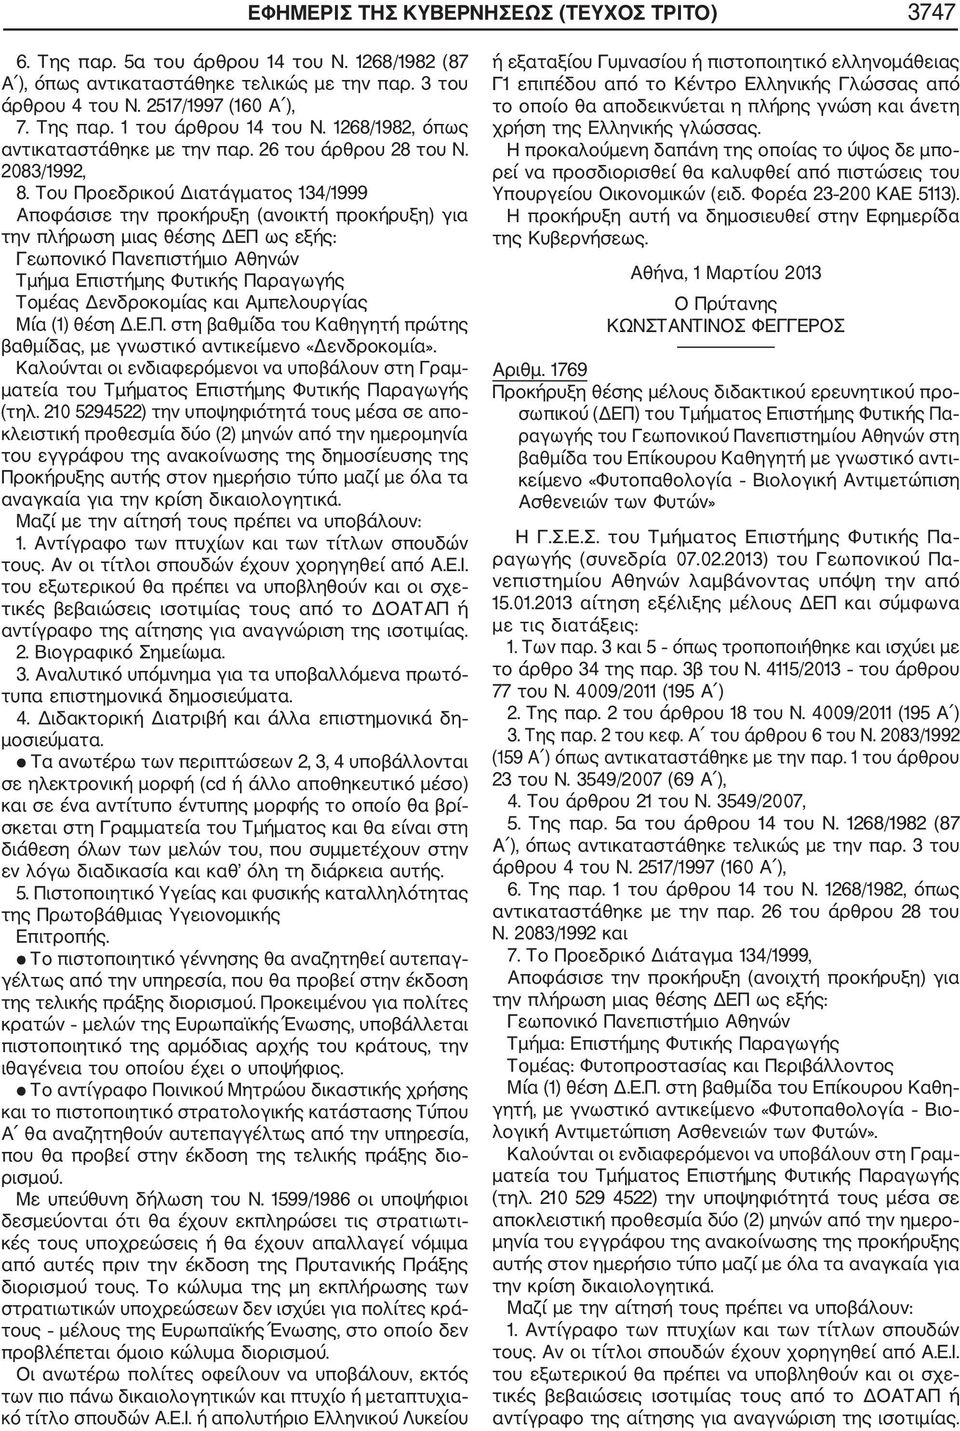 Του Προεδρικού Διατάγματος 134/1999 Τμήμα Επιστήμης Φυτικής Παραγωγής Τομέας Δενδροκομίας και Αμπελουργίας Μία (1) θέση Δ.Ε.Π. στη βαθμίδα του Καθηγητή πρώτης βαθμίδας, με γνωστικό αντικείμενο «Δενδροκομία».